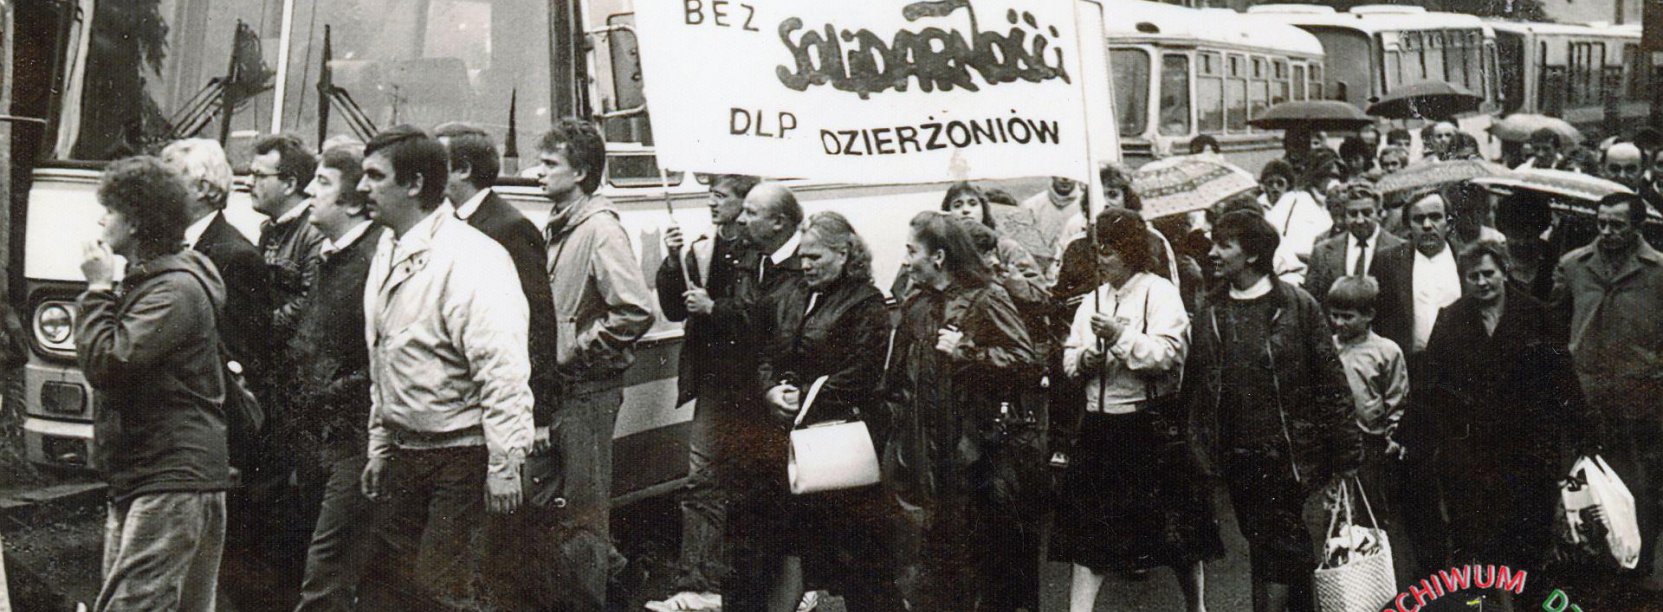 Czarno biała fotografia grupy ludzi przy autobusie z transparentem solidarności